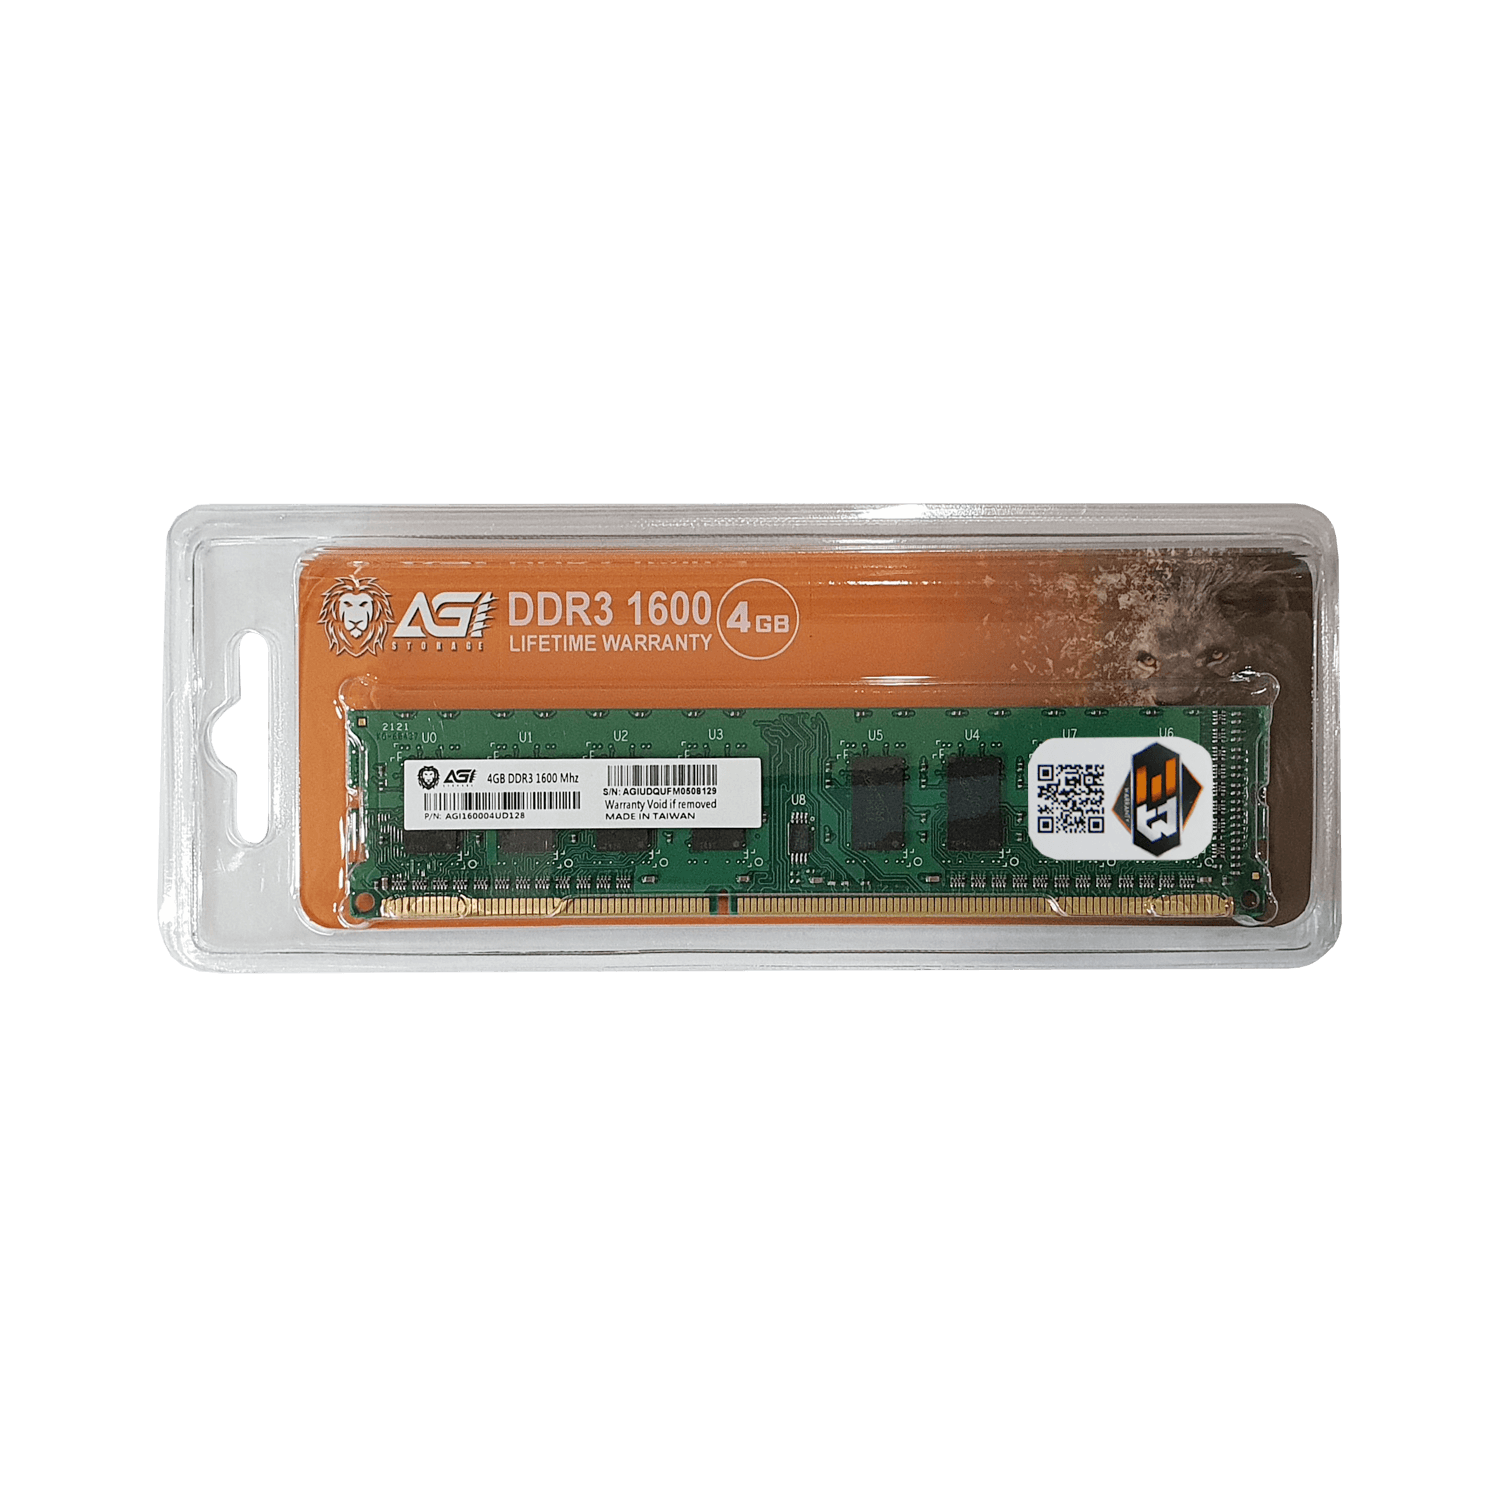 Cover Ram Agi DDR3 1600 4GB